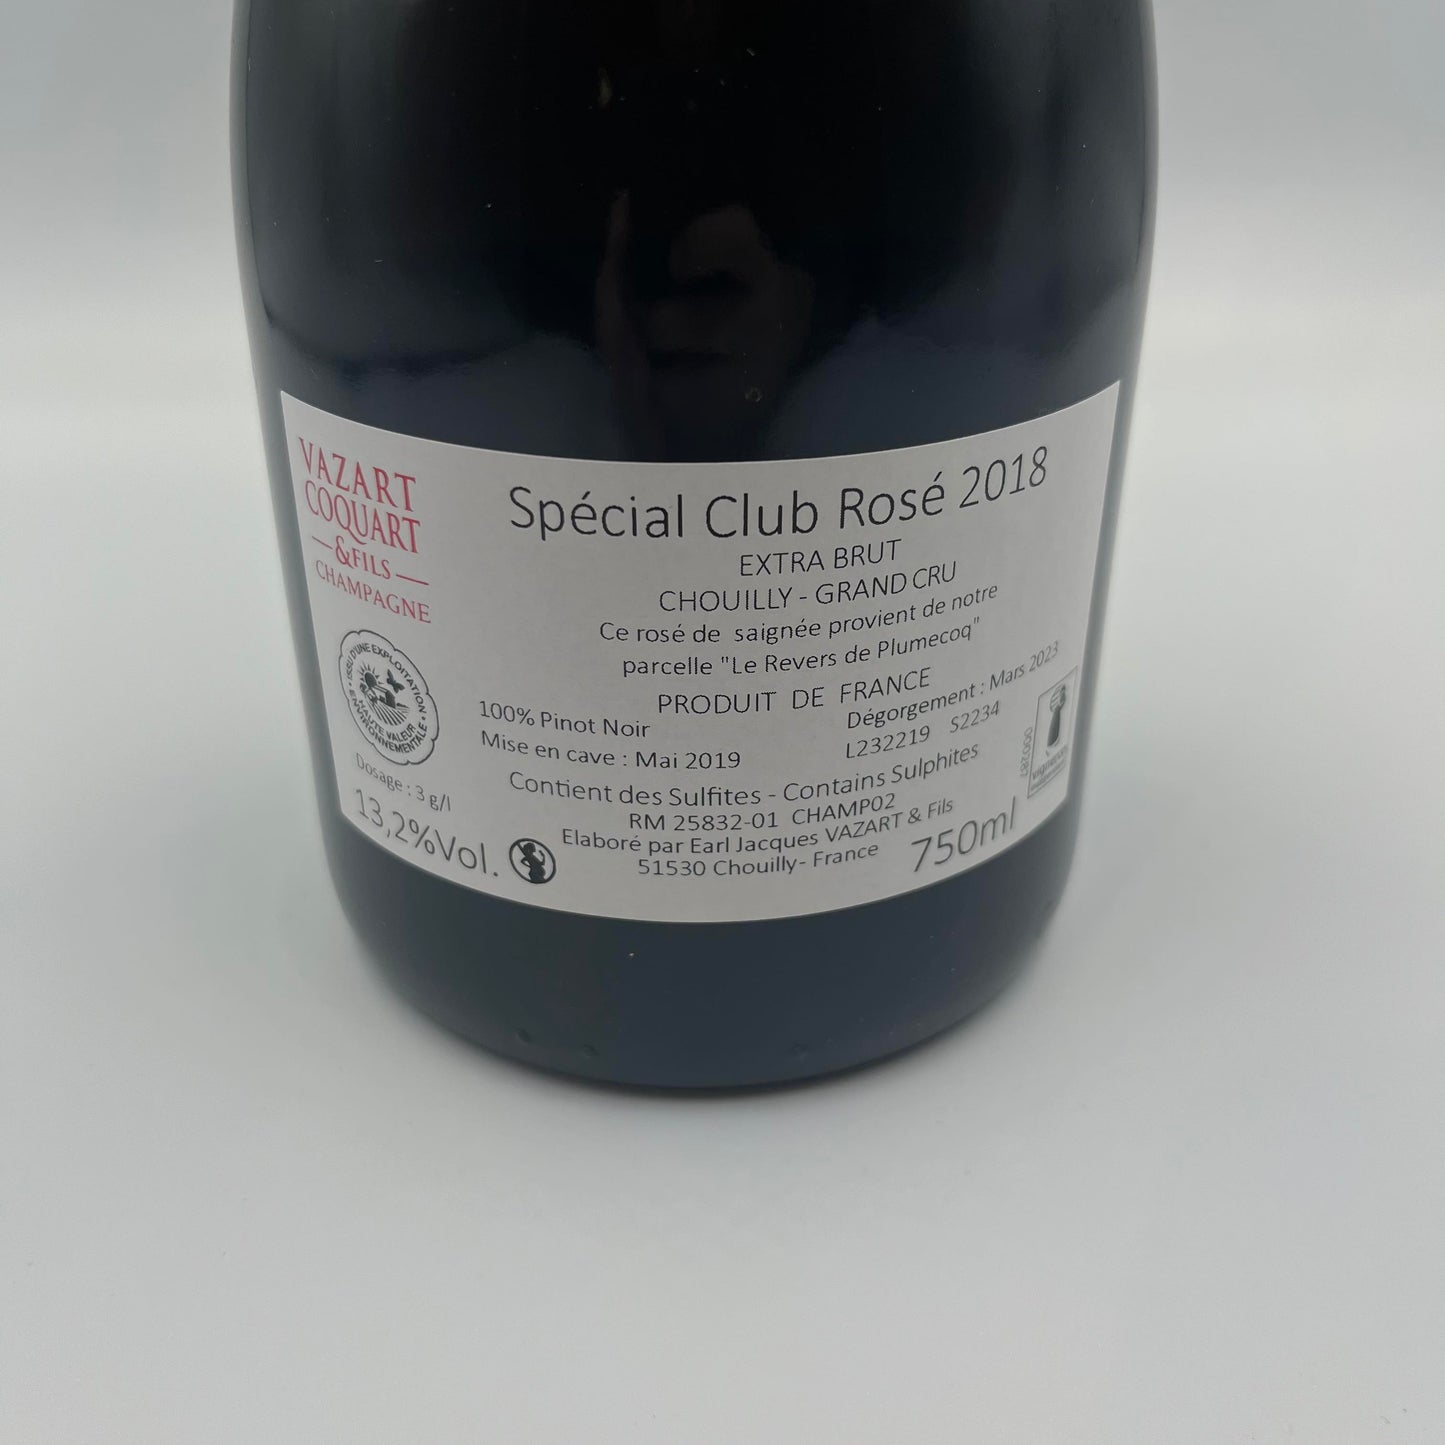 Vazart Coquart Special Club Rosé 2018